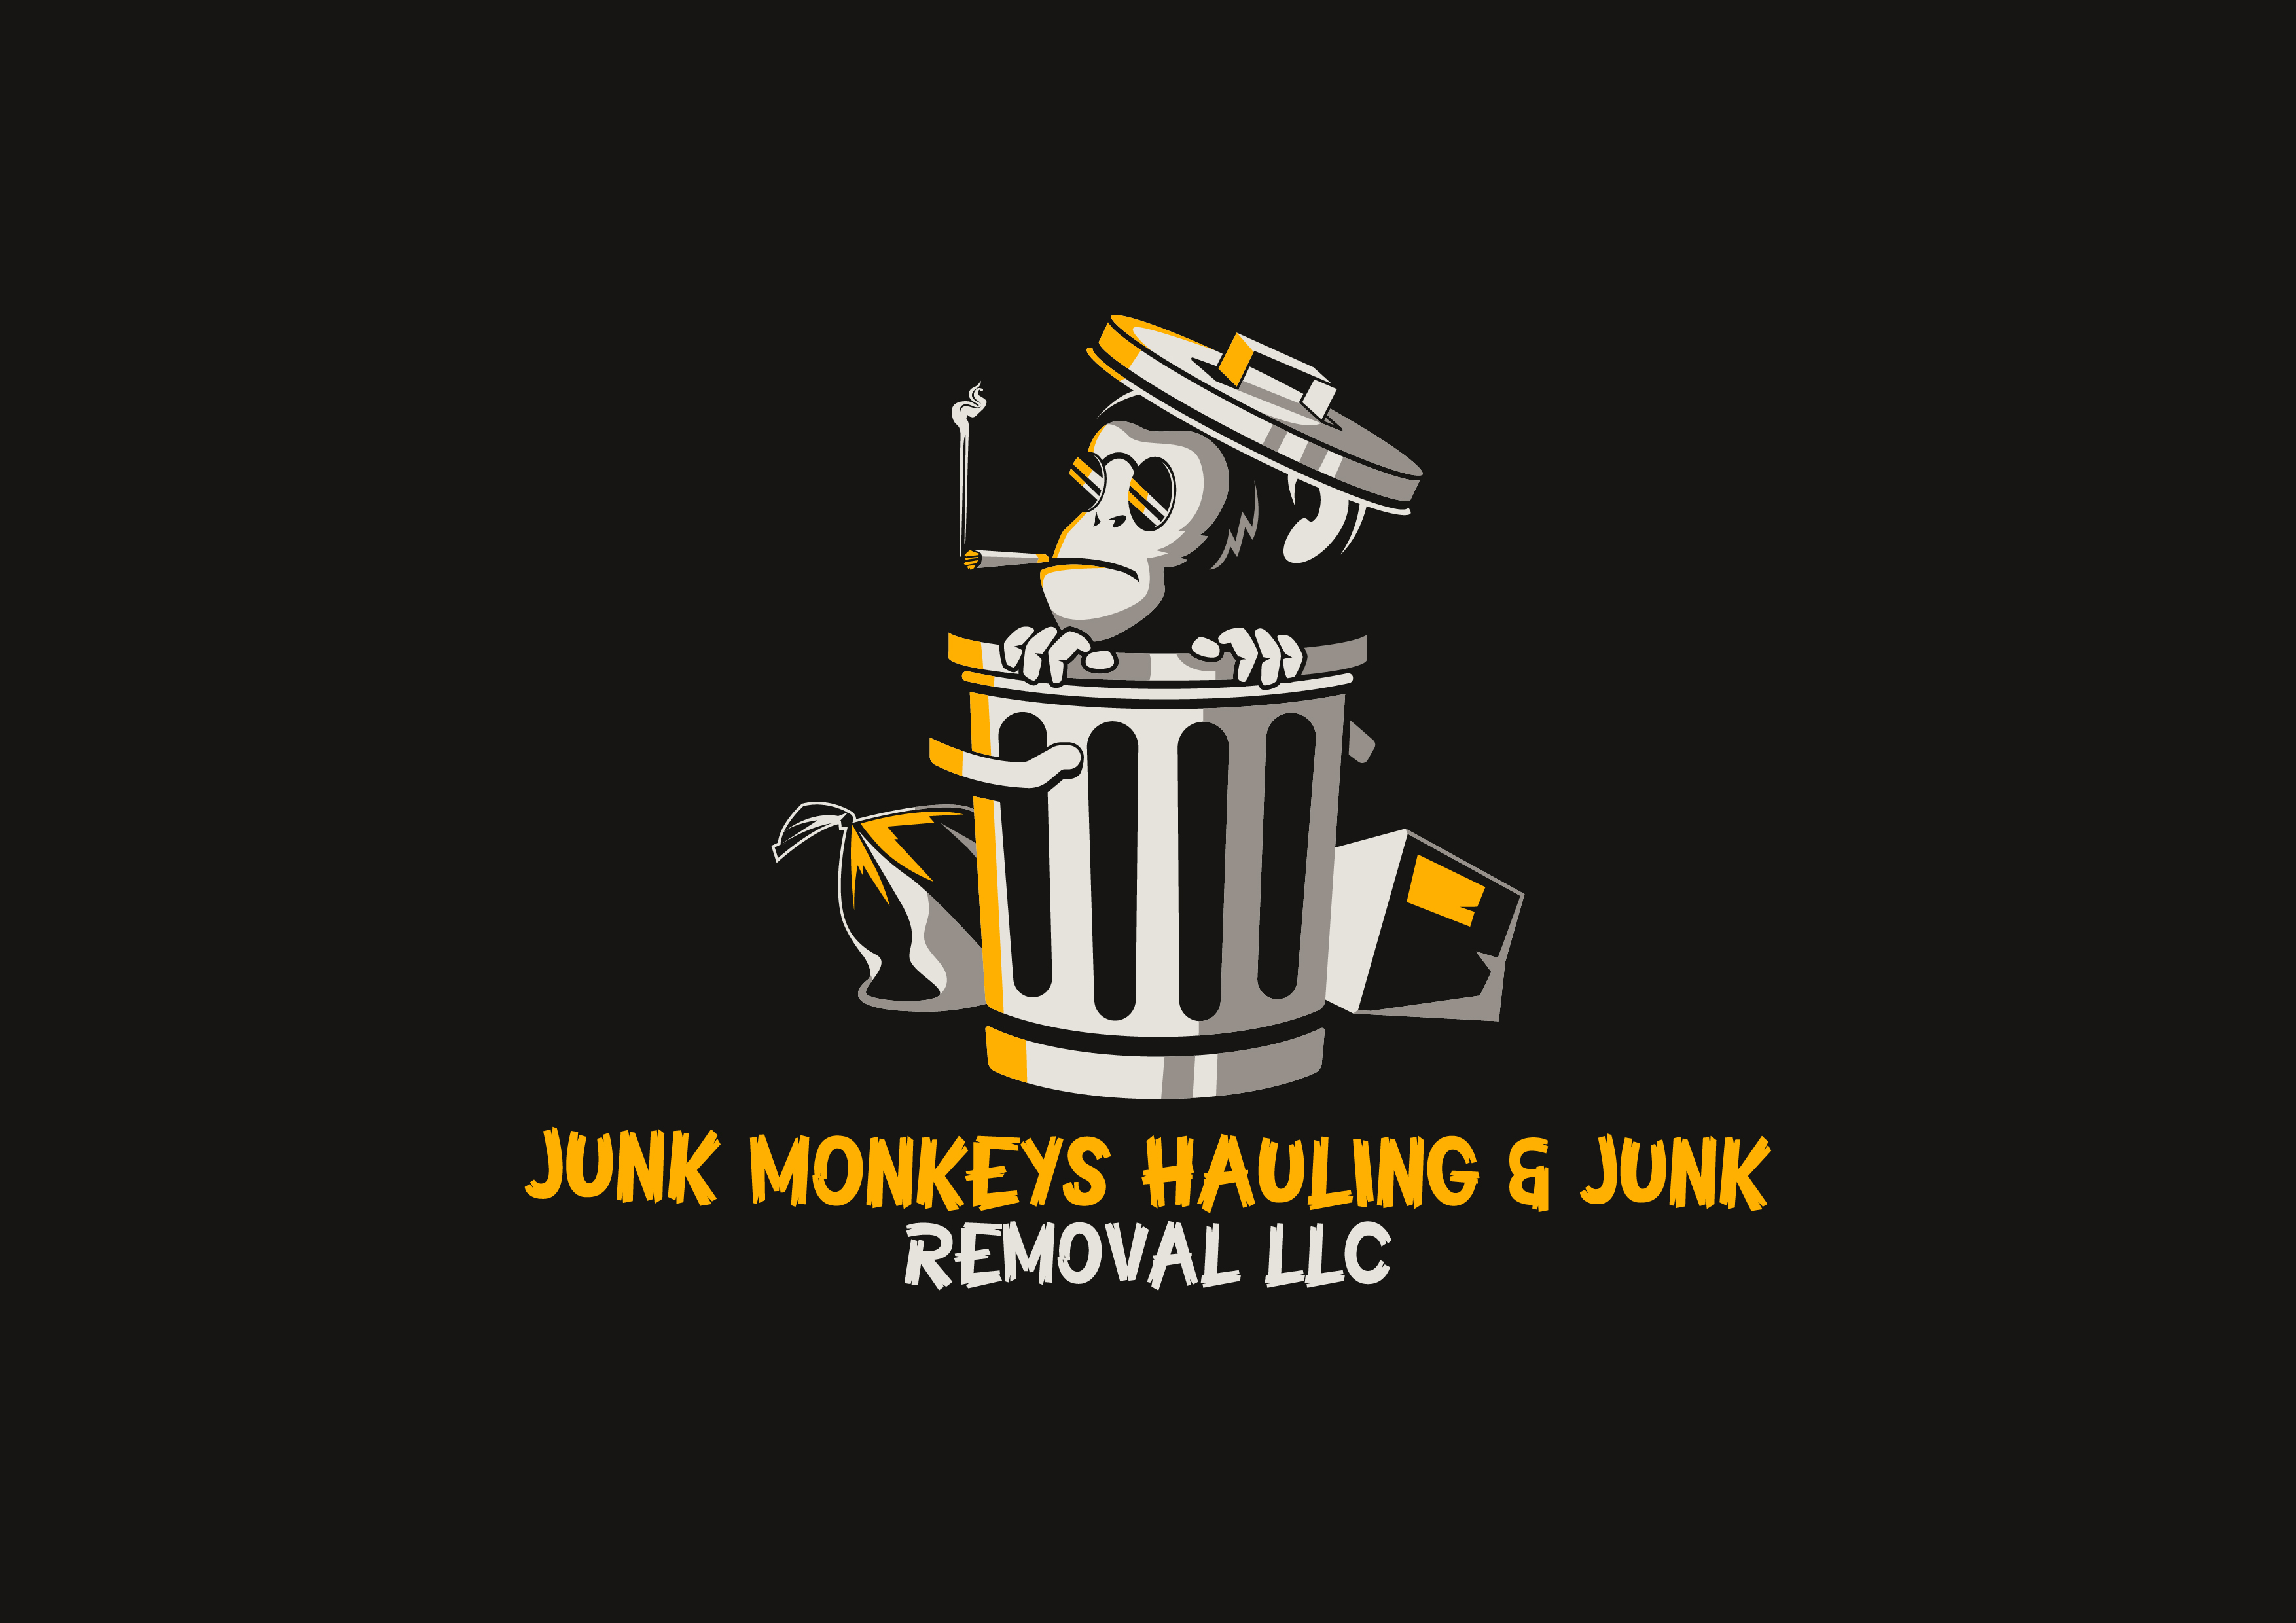 Junk Monkeys Hauling & Junk Removal